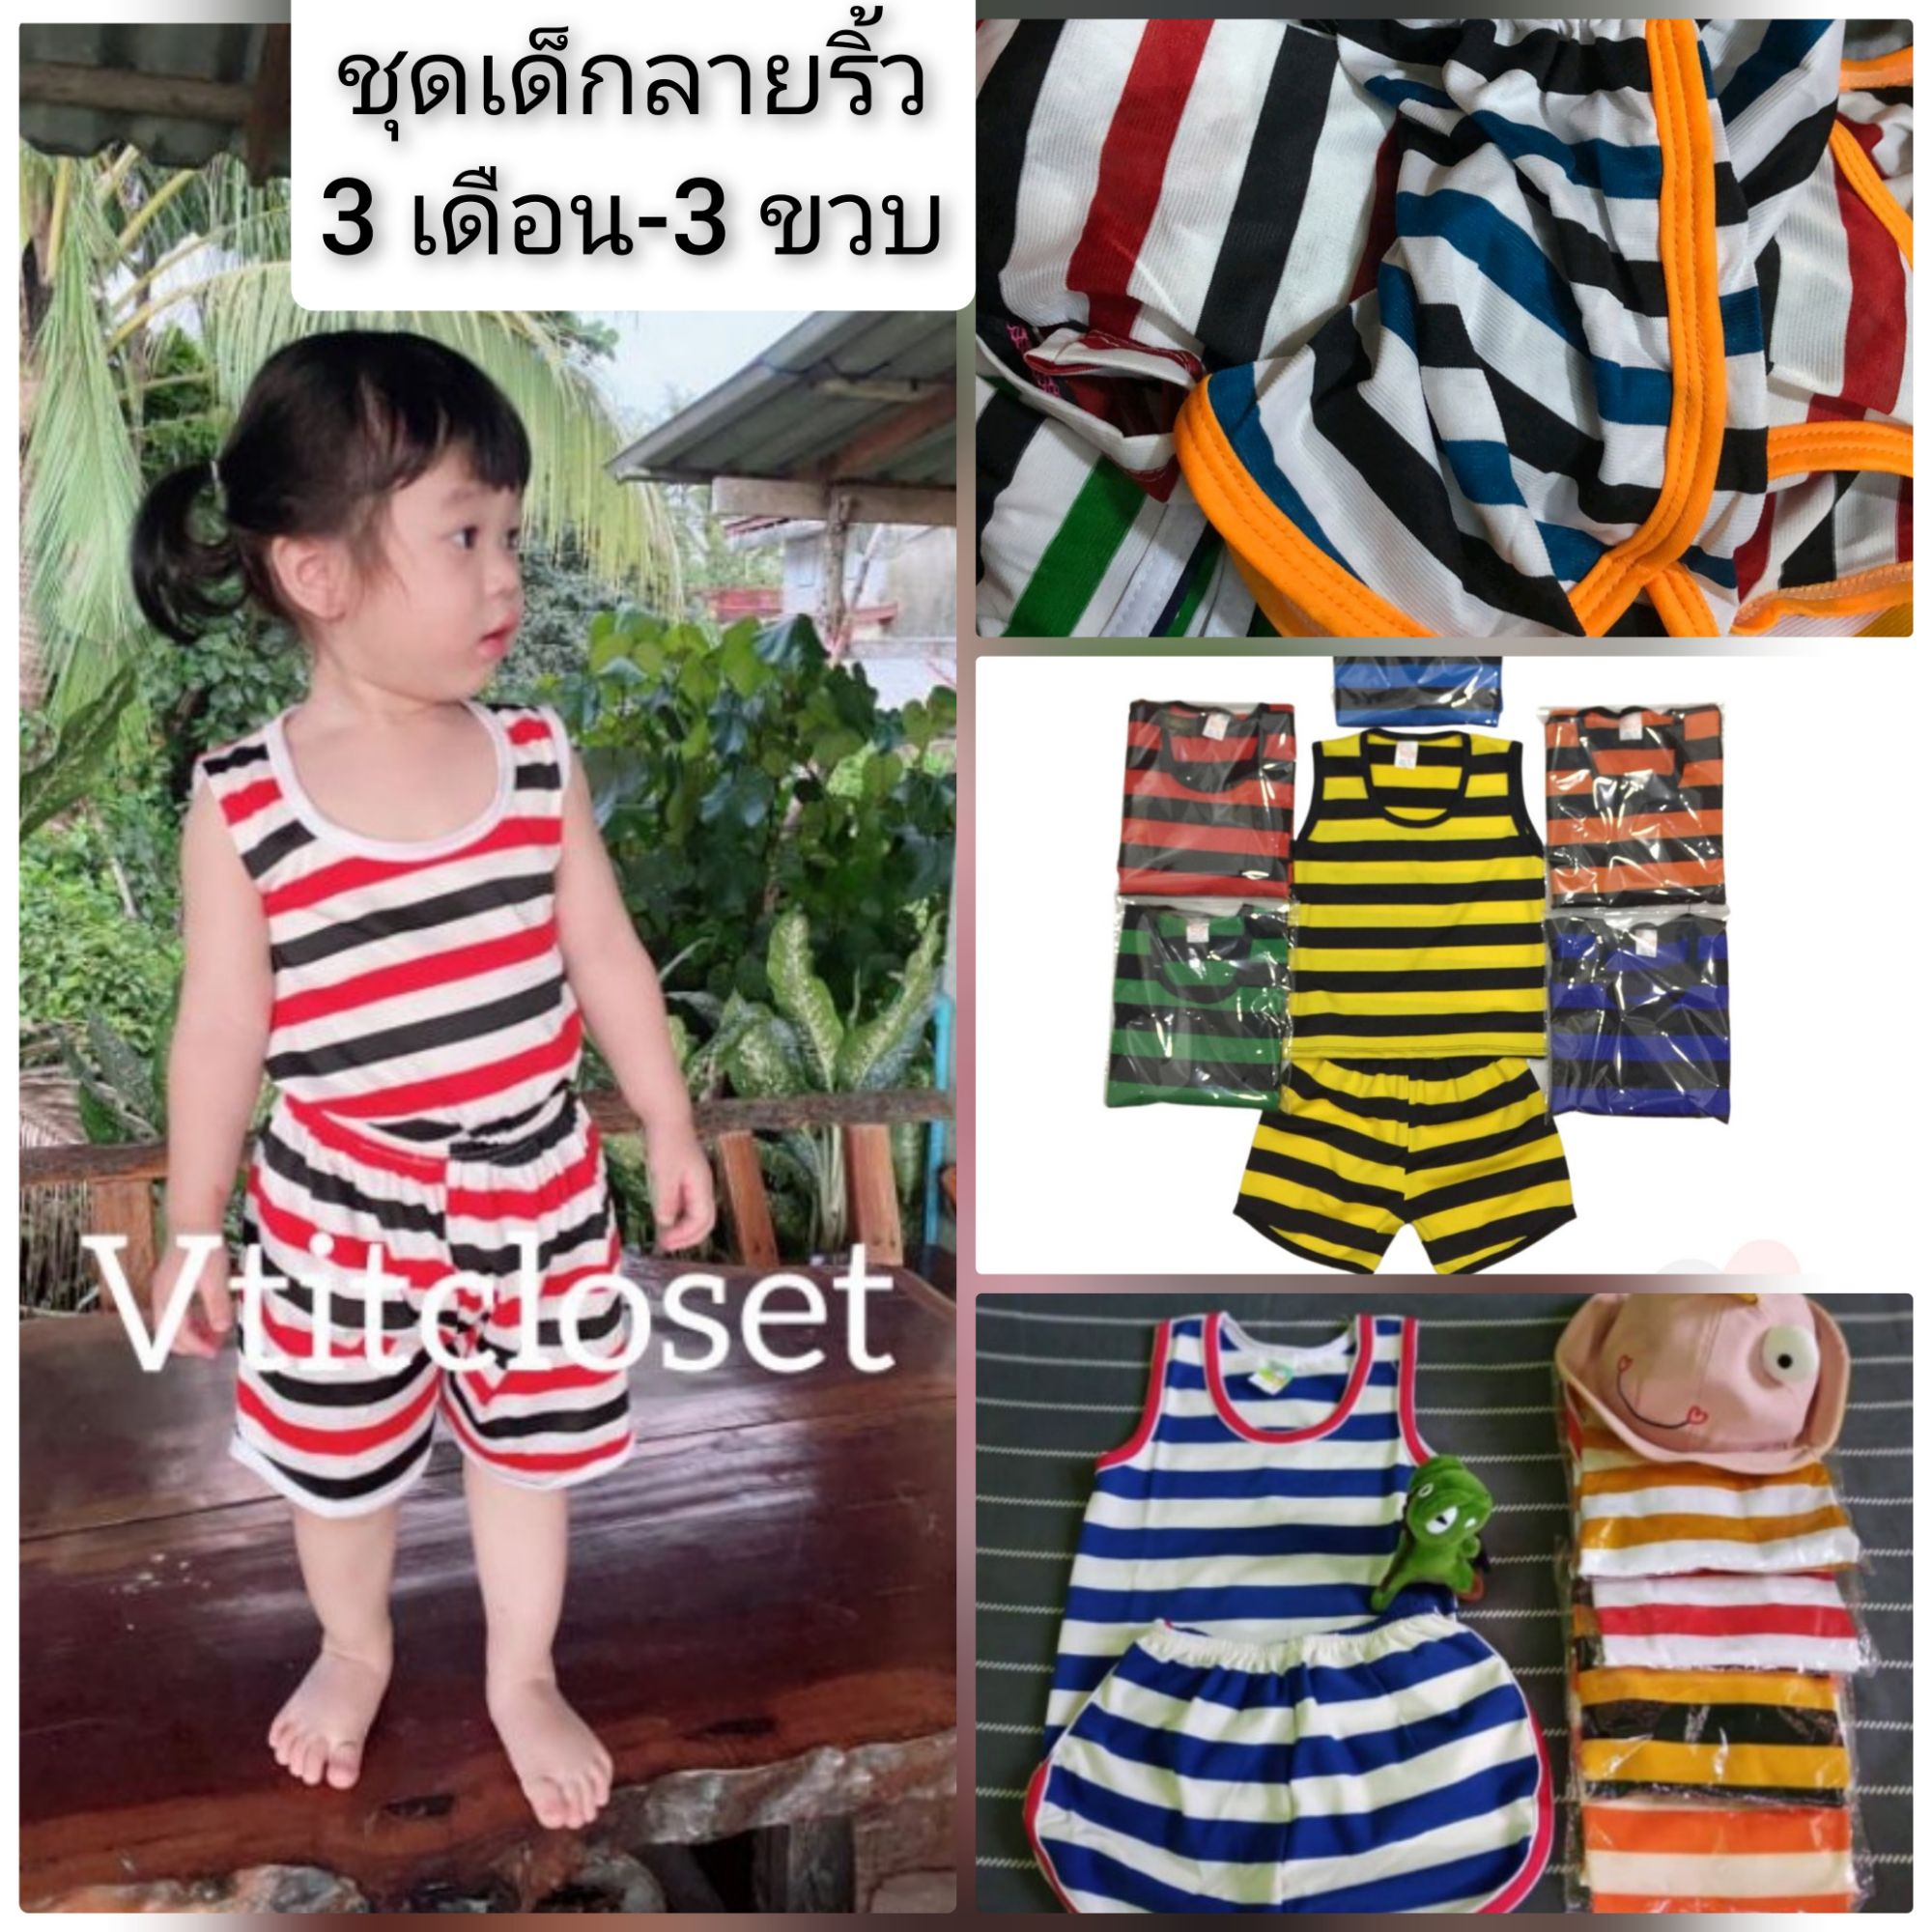 Vtitcloset ชุดเด็ก ลายริ้วสีสวย เสื้อกล้าม+กางเกง ใส่สบายๆ เด็ก 3 เดือน-3 ขวบ (เลือกสี/เลือกไซส์ ) แบบเข้าใหม่ตลอด (ดูรอบ อกเสื้อ เป็นเกณฑ์)